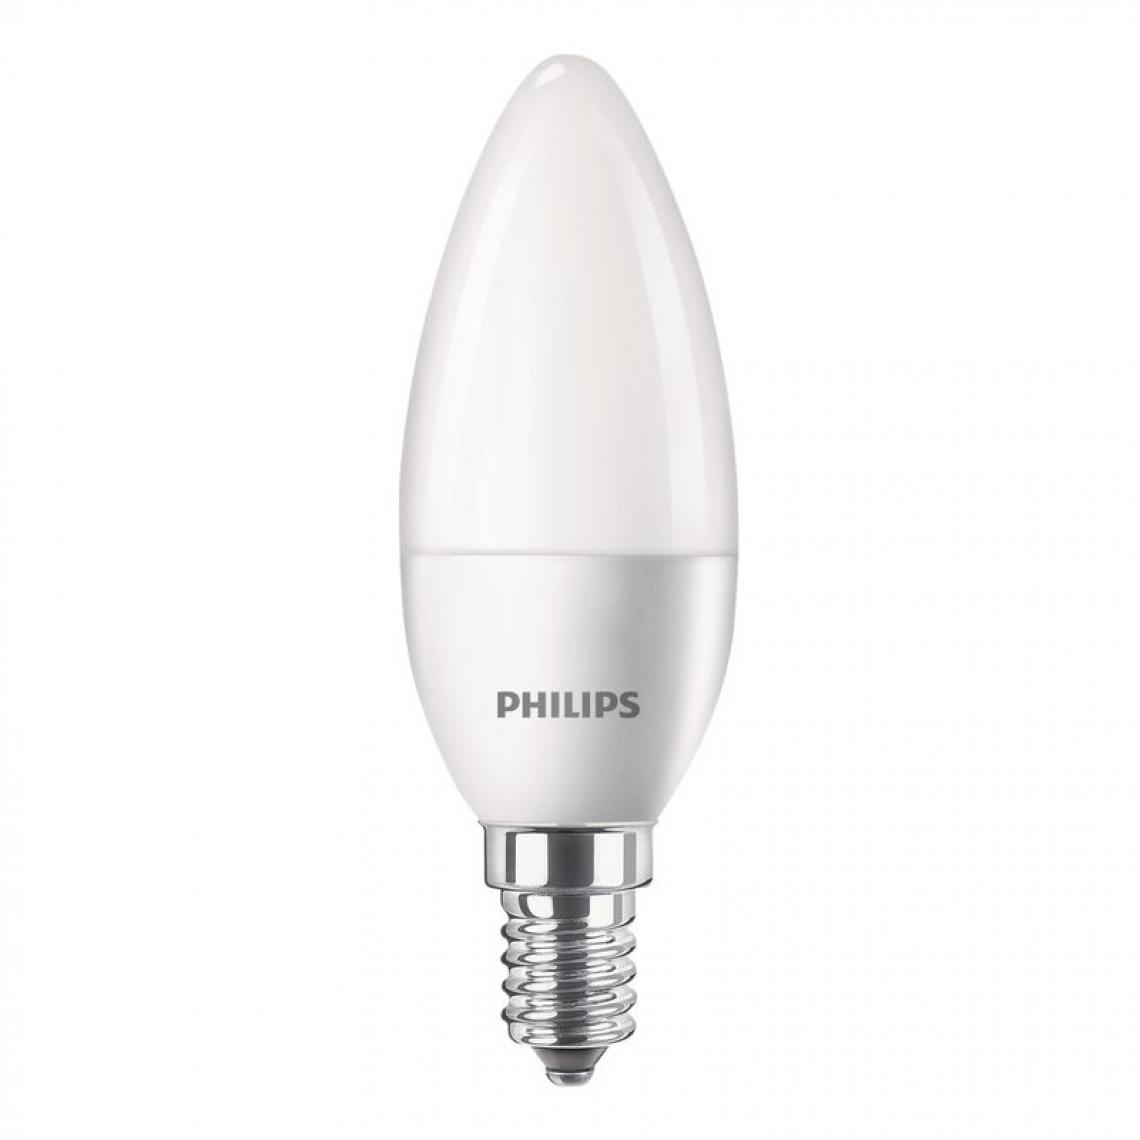 Philips - Lot de 2 ampoules LED flamme PHILIPS 40W E14 blanc froid - Ampoules LED